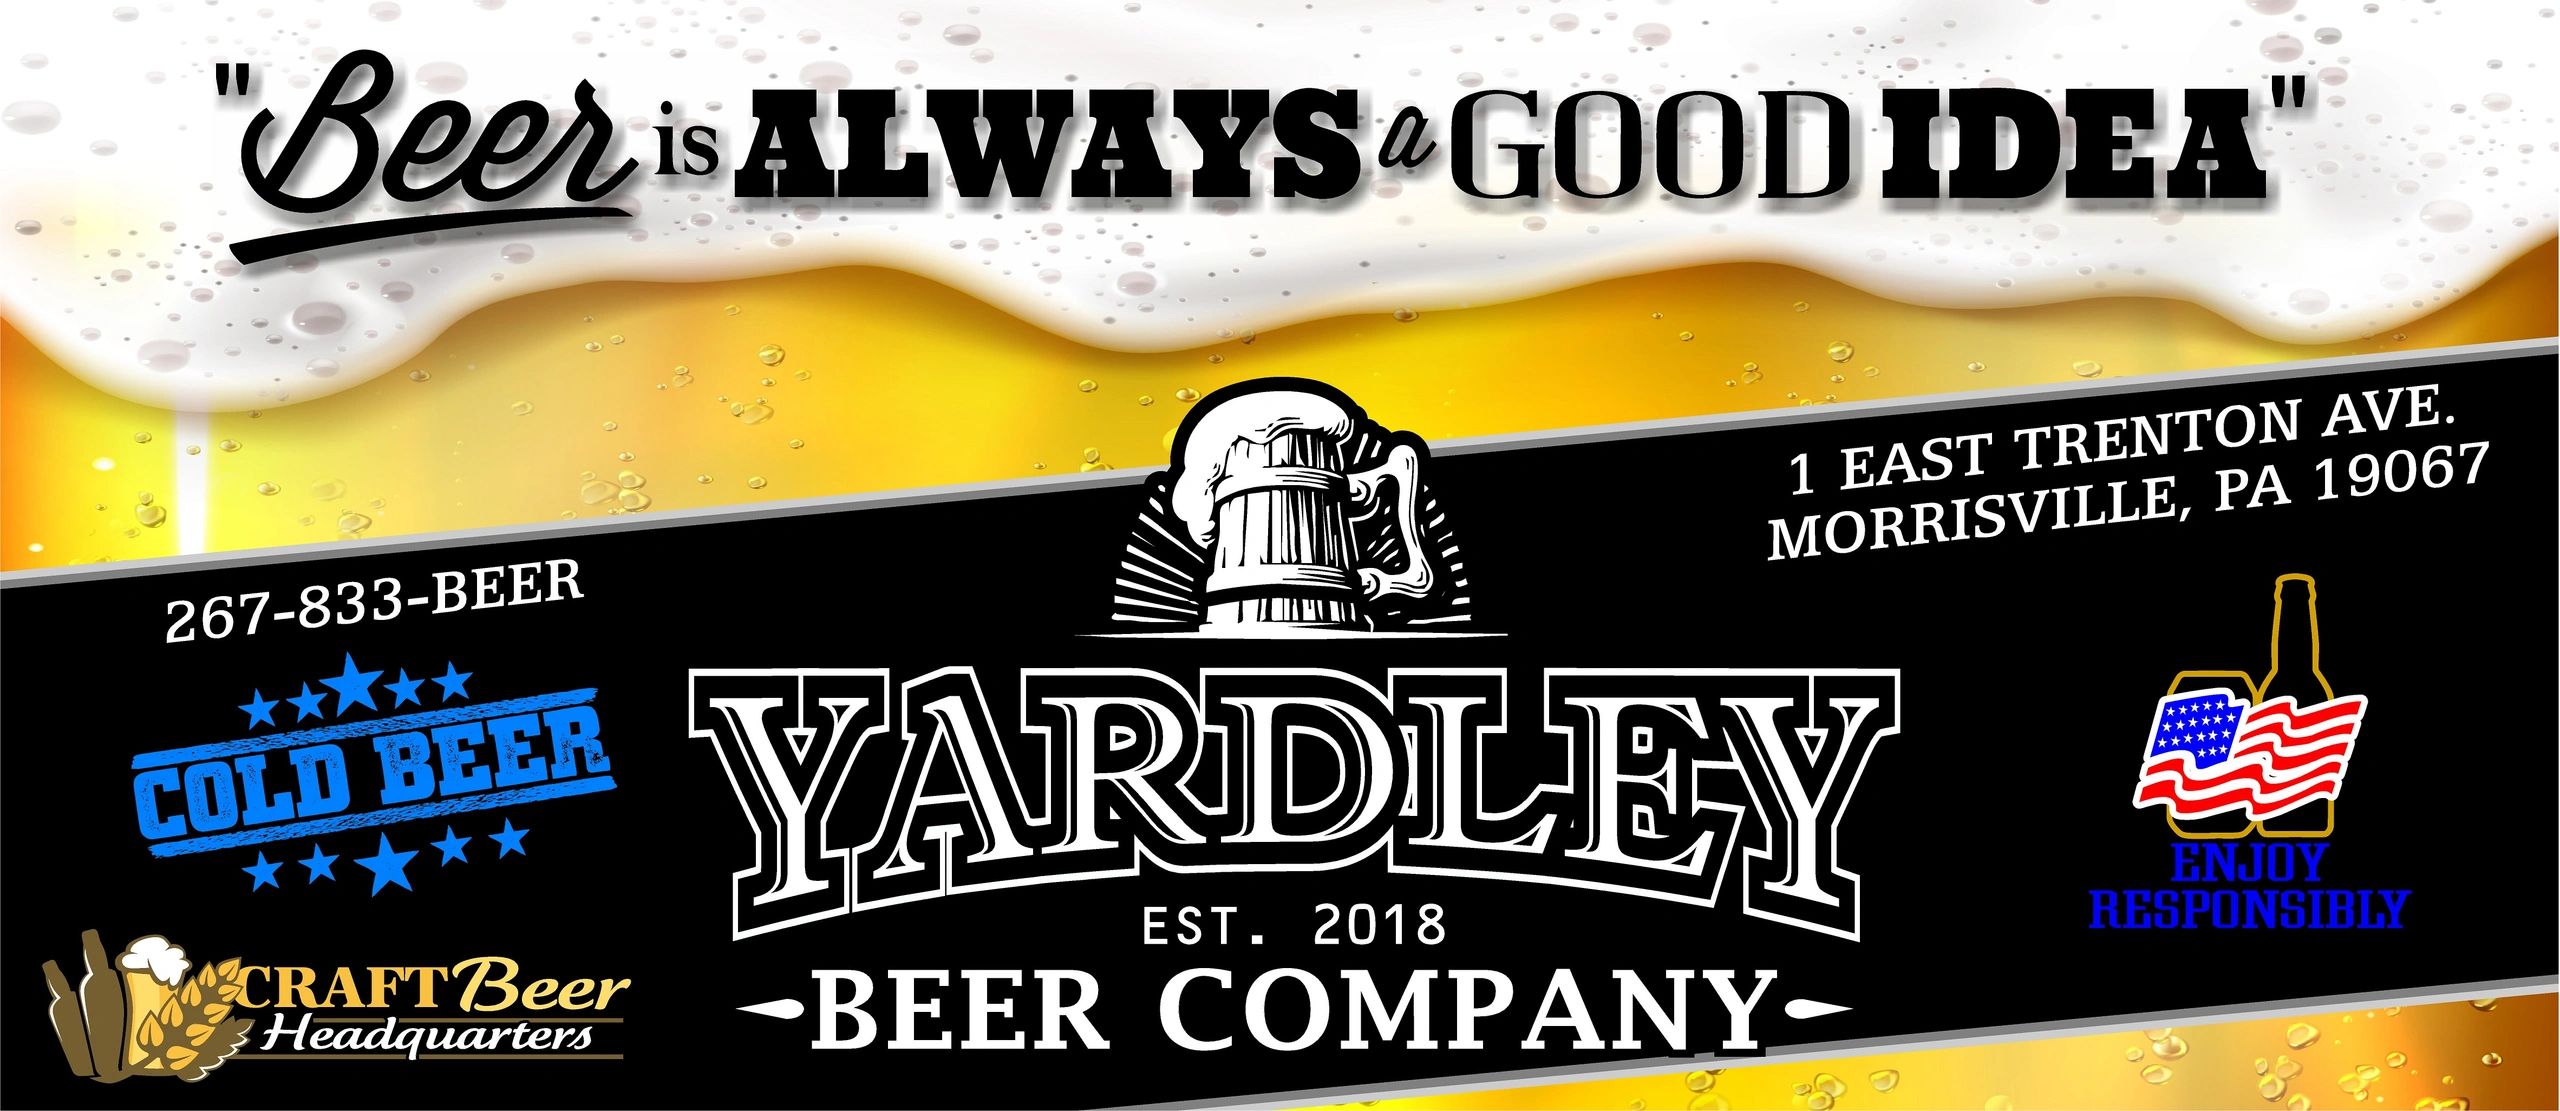 Yardley Beer Company Beer, Beer Store, Craft Beer, Beer